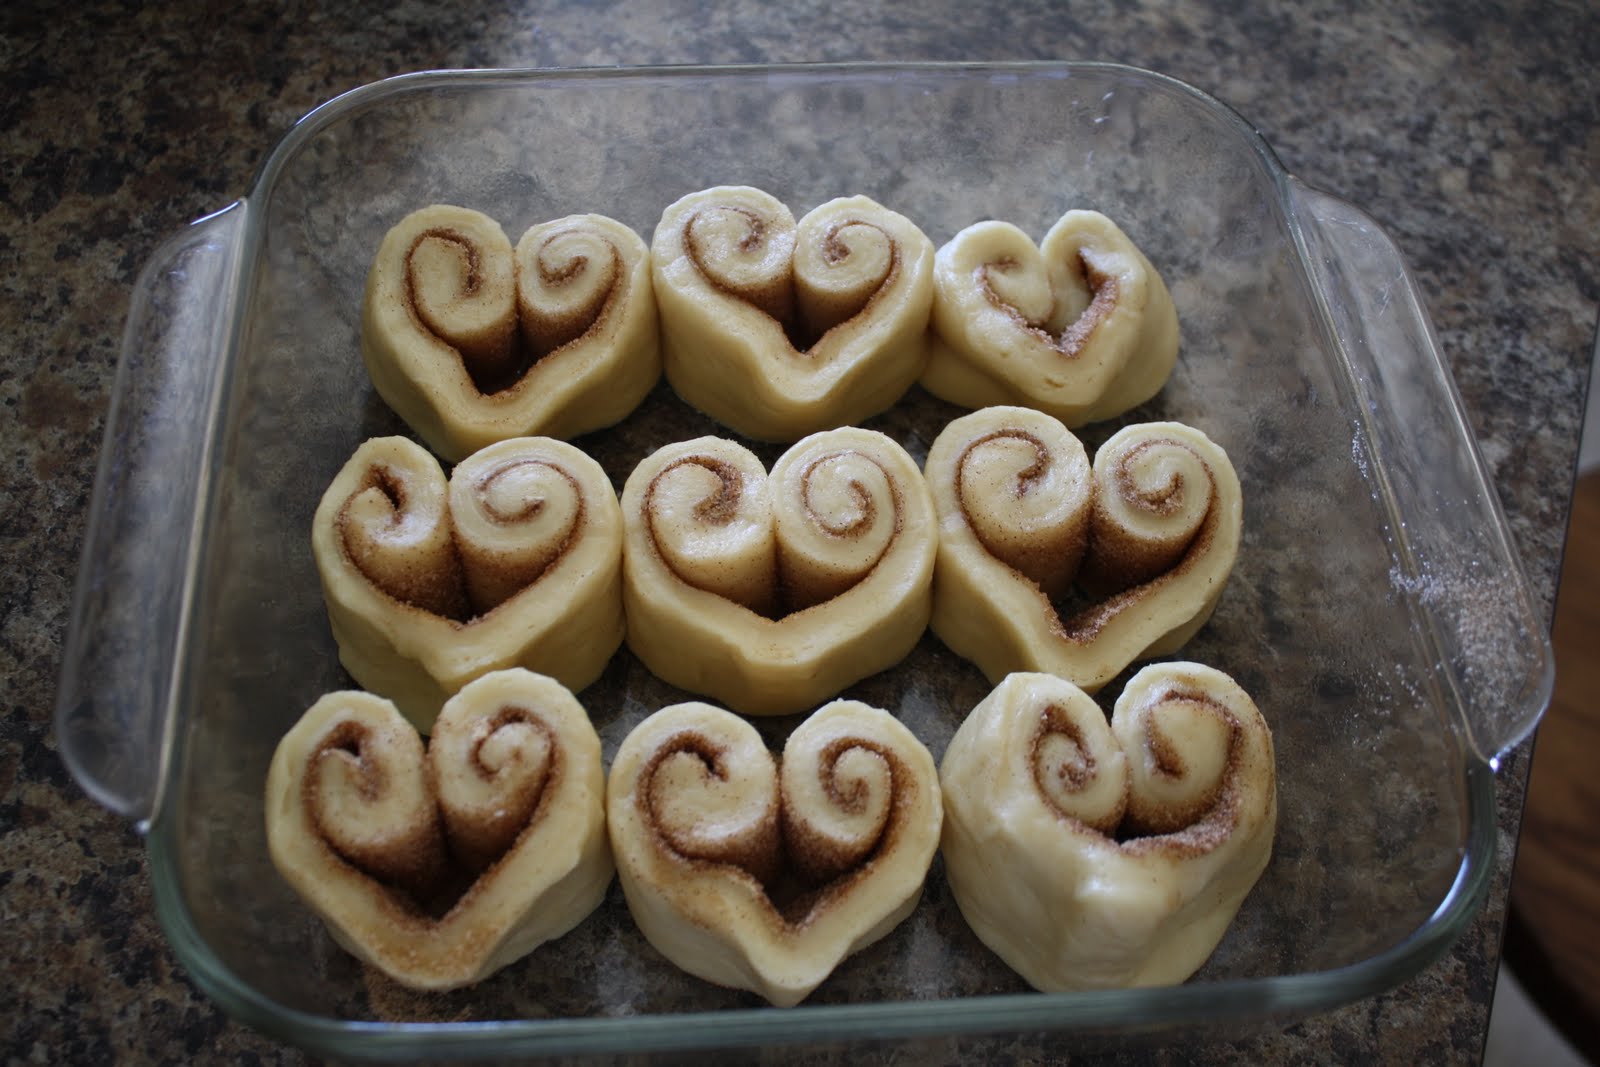 DIY Heart-Shaped Cinnamon Rolls 25+ Heart-Shaped Food Ideas | NoBiggie.net